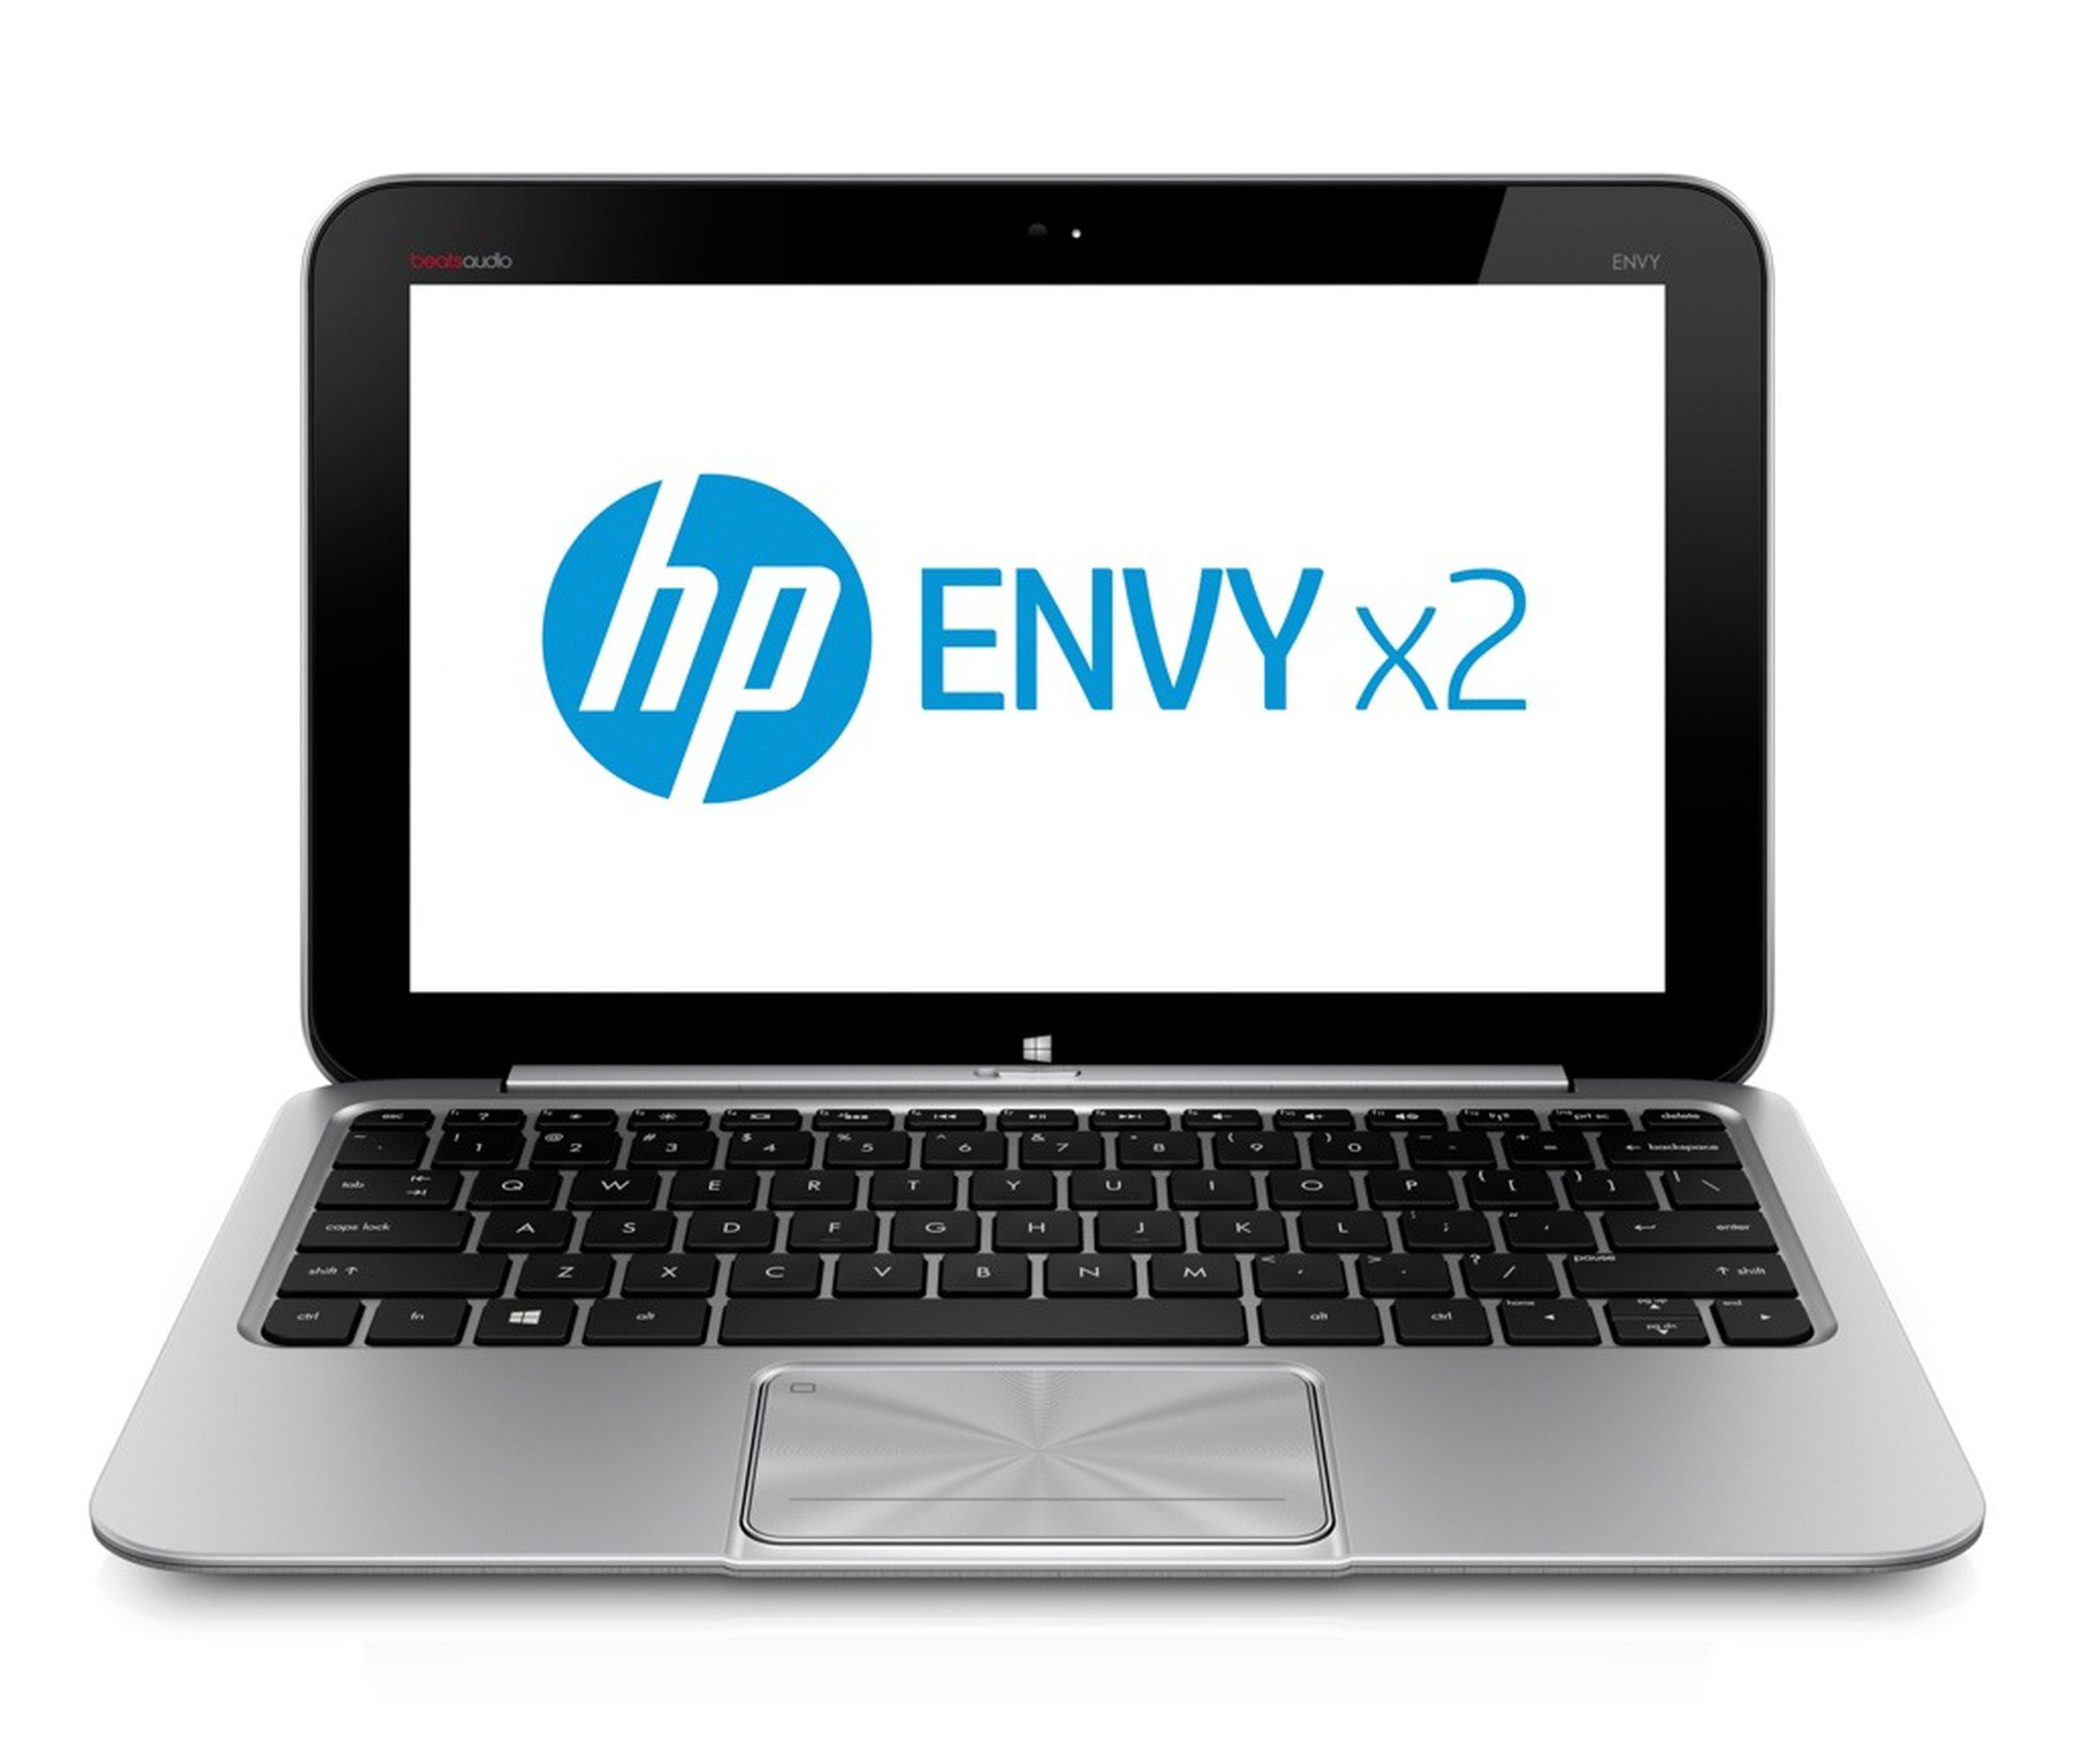 HP Envy x2 official photos